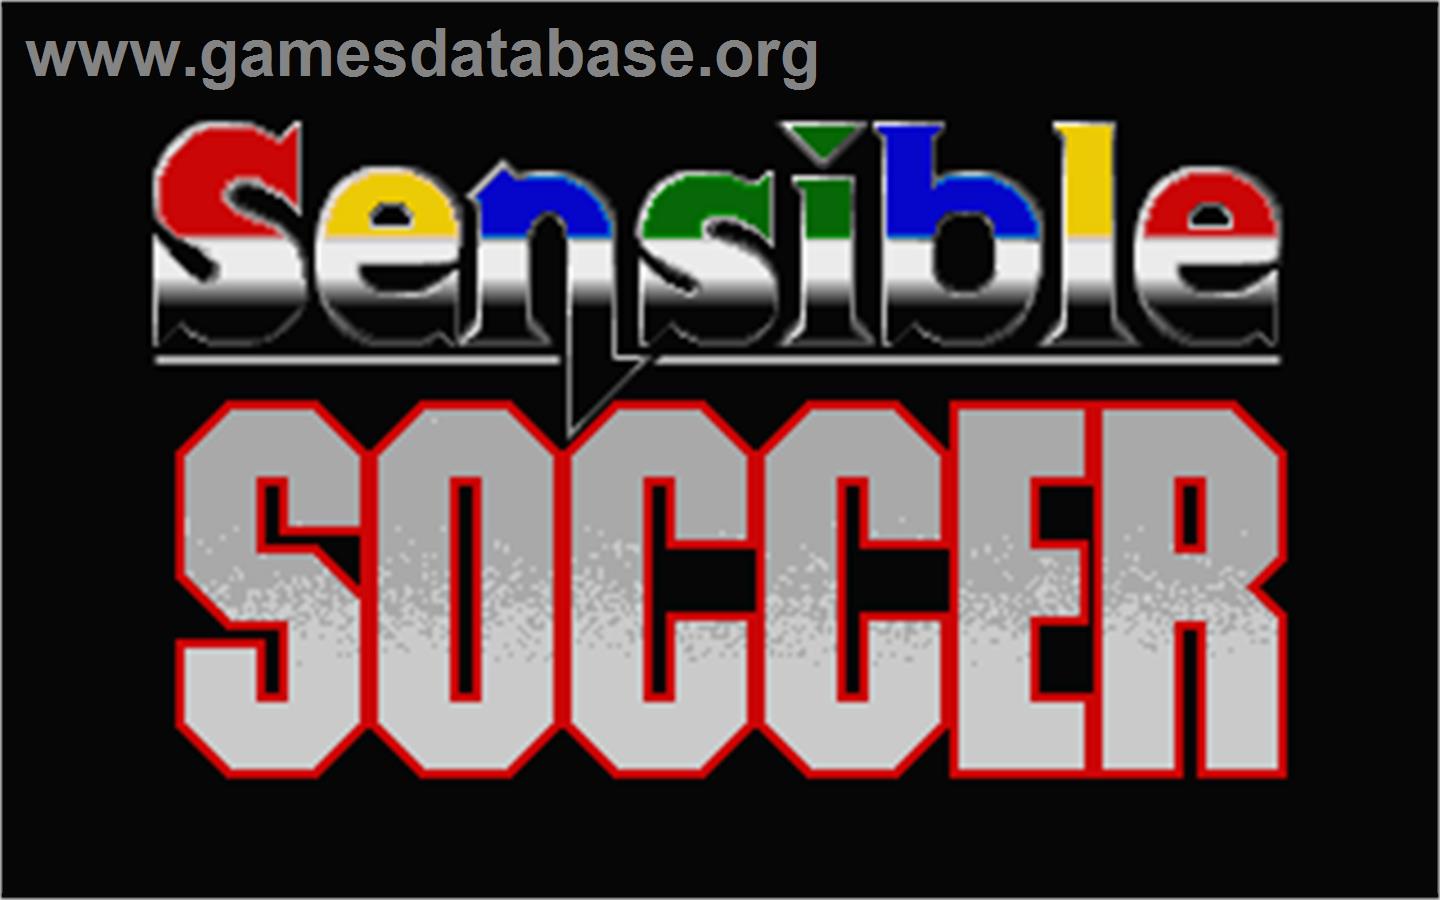 Sensible Soccer: European Champions - Atari ST - Artwork - Title Screen